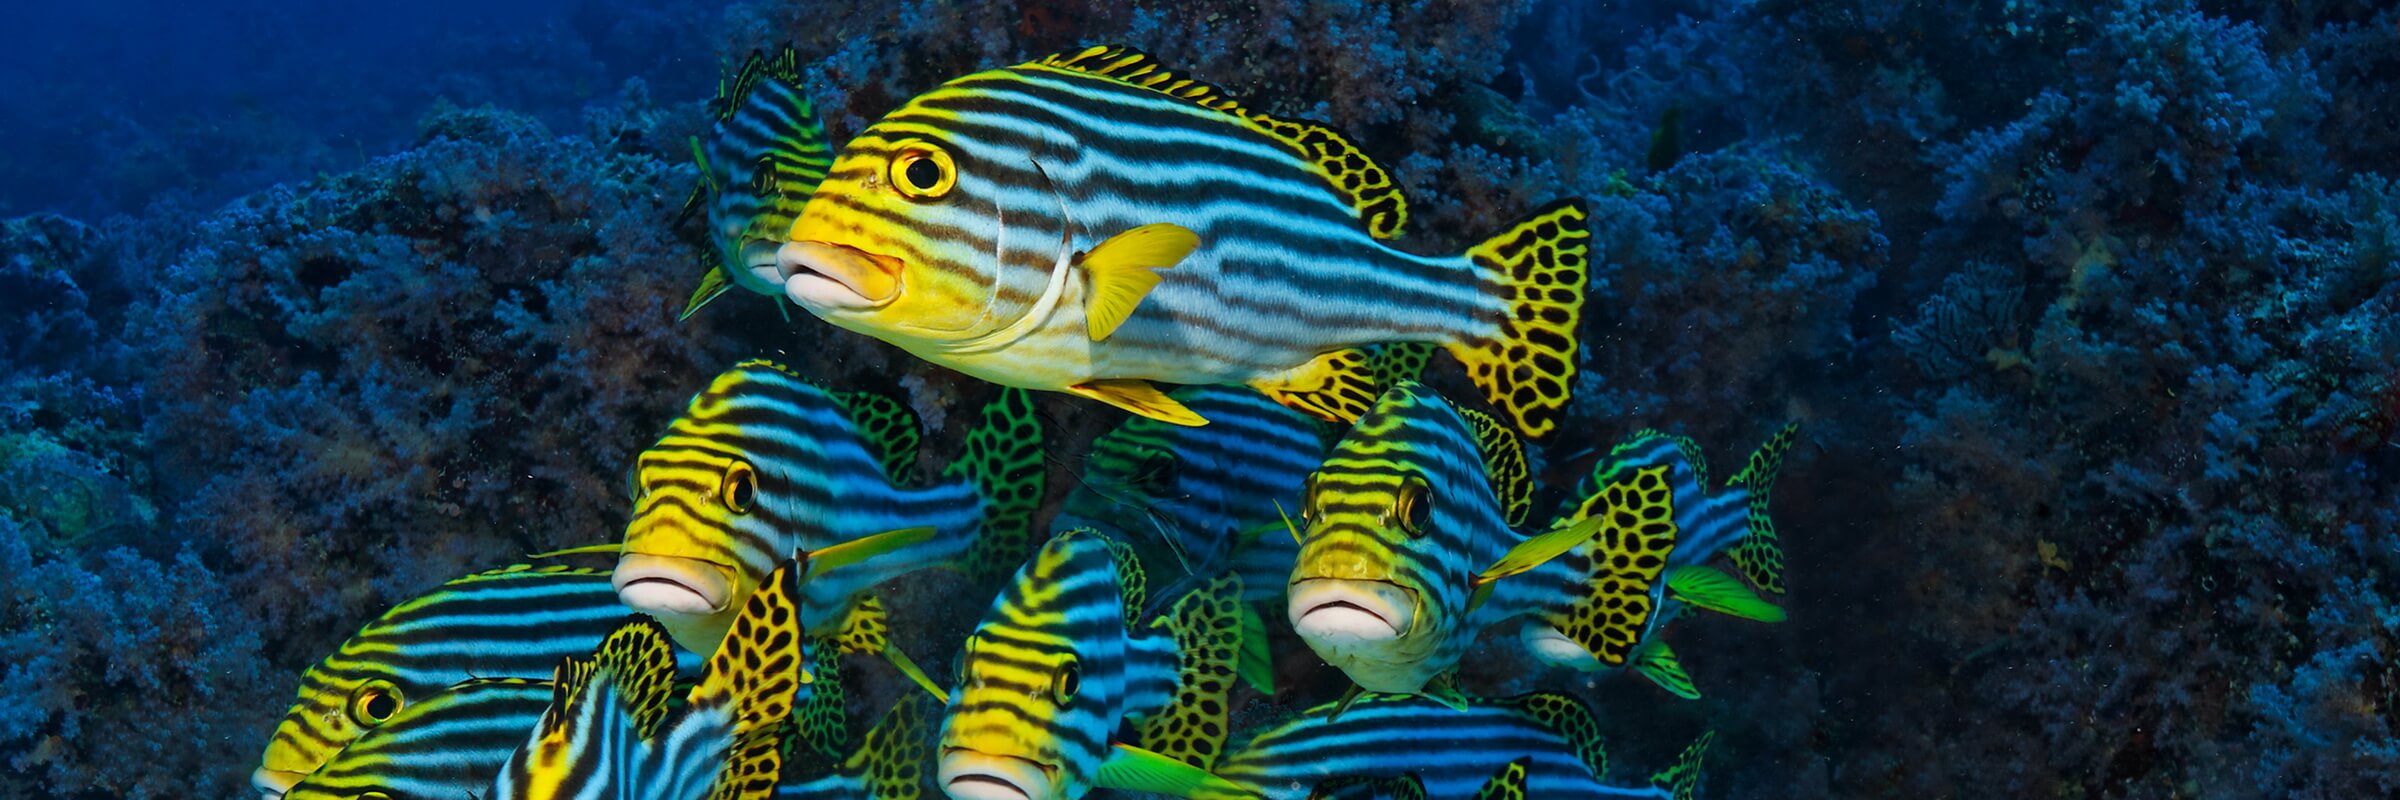 Lippfische sind meist sehr farbenfroh und die einzelnen Gattungen äußerst Vielfältig in Größe und Gestalt.